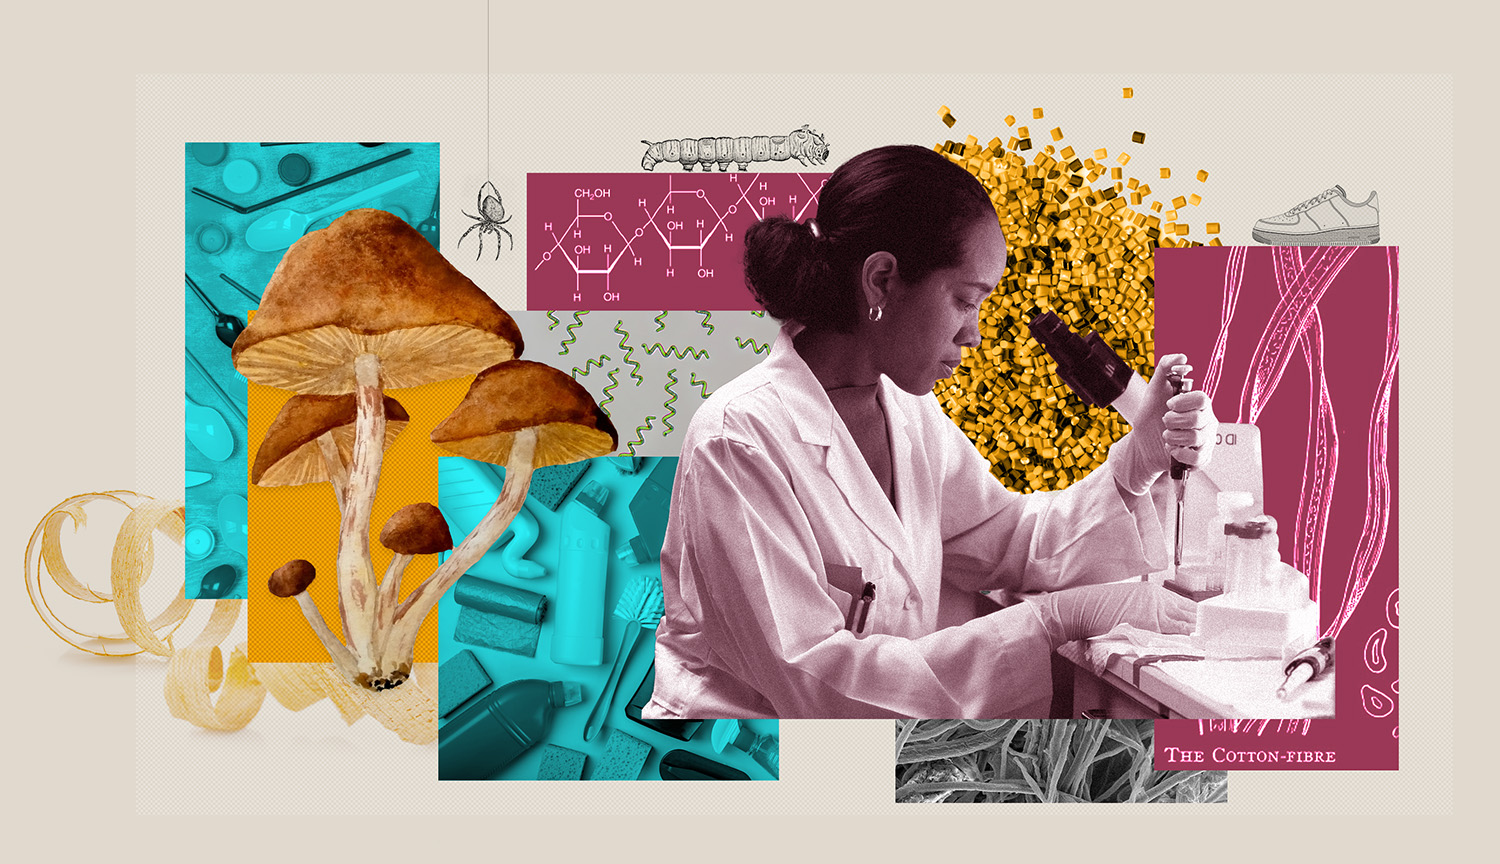 Un collage muestra a un científico utilizando una pipeta, así como diversos polímeros y materiales naturales.